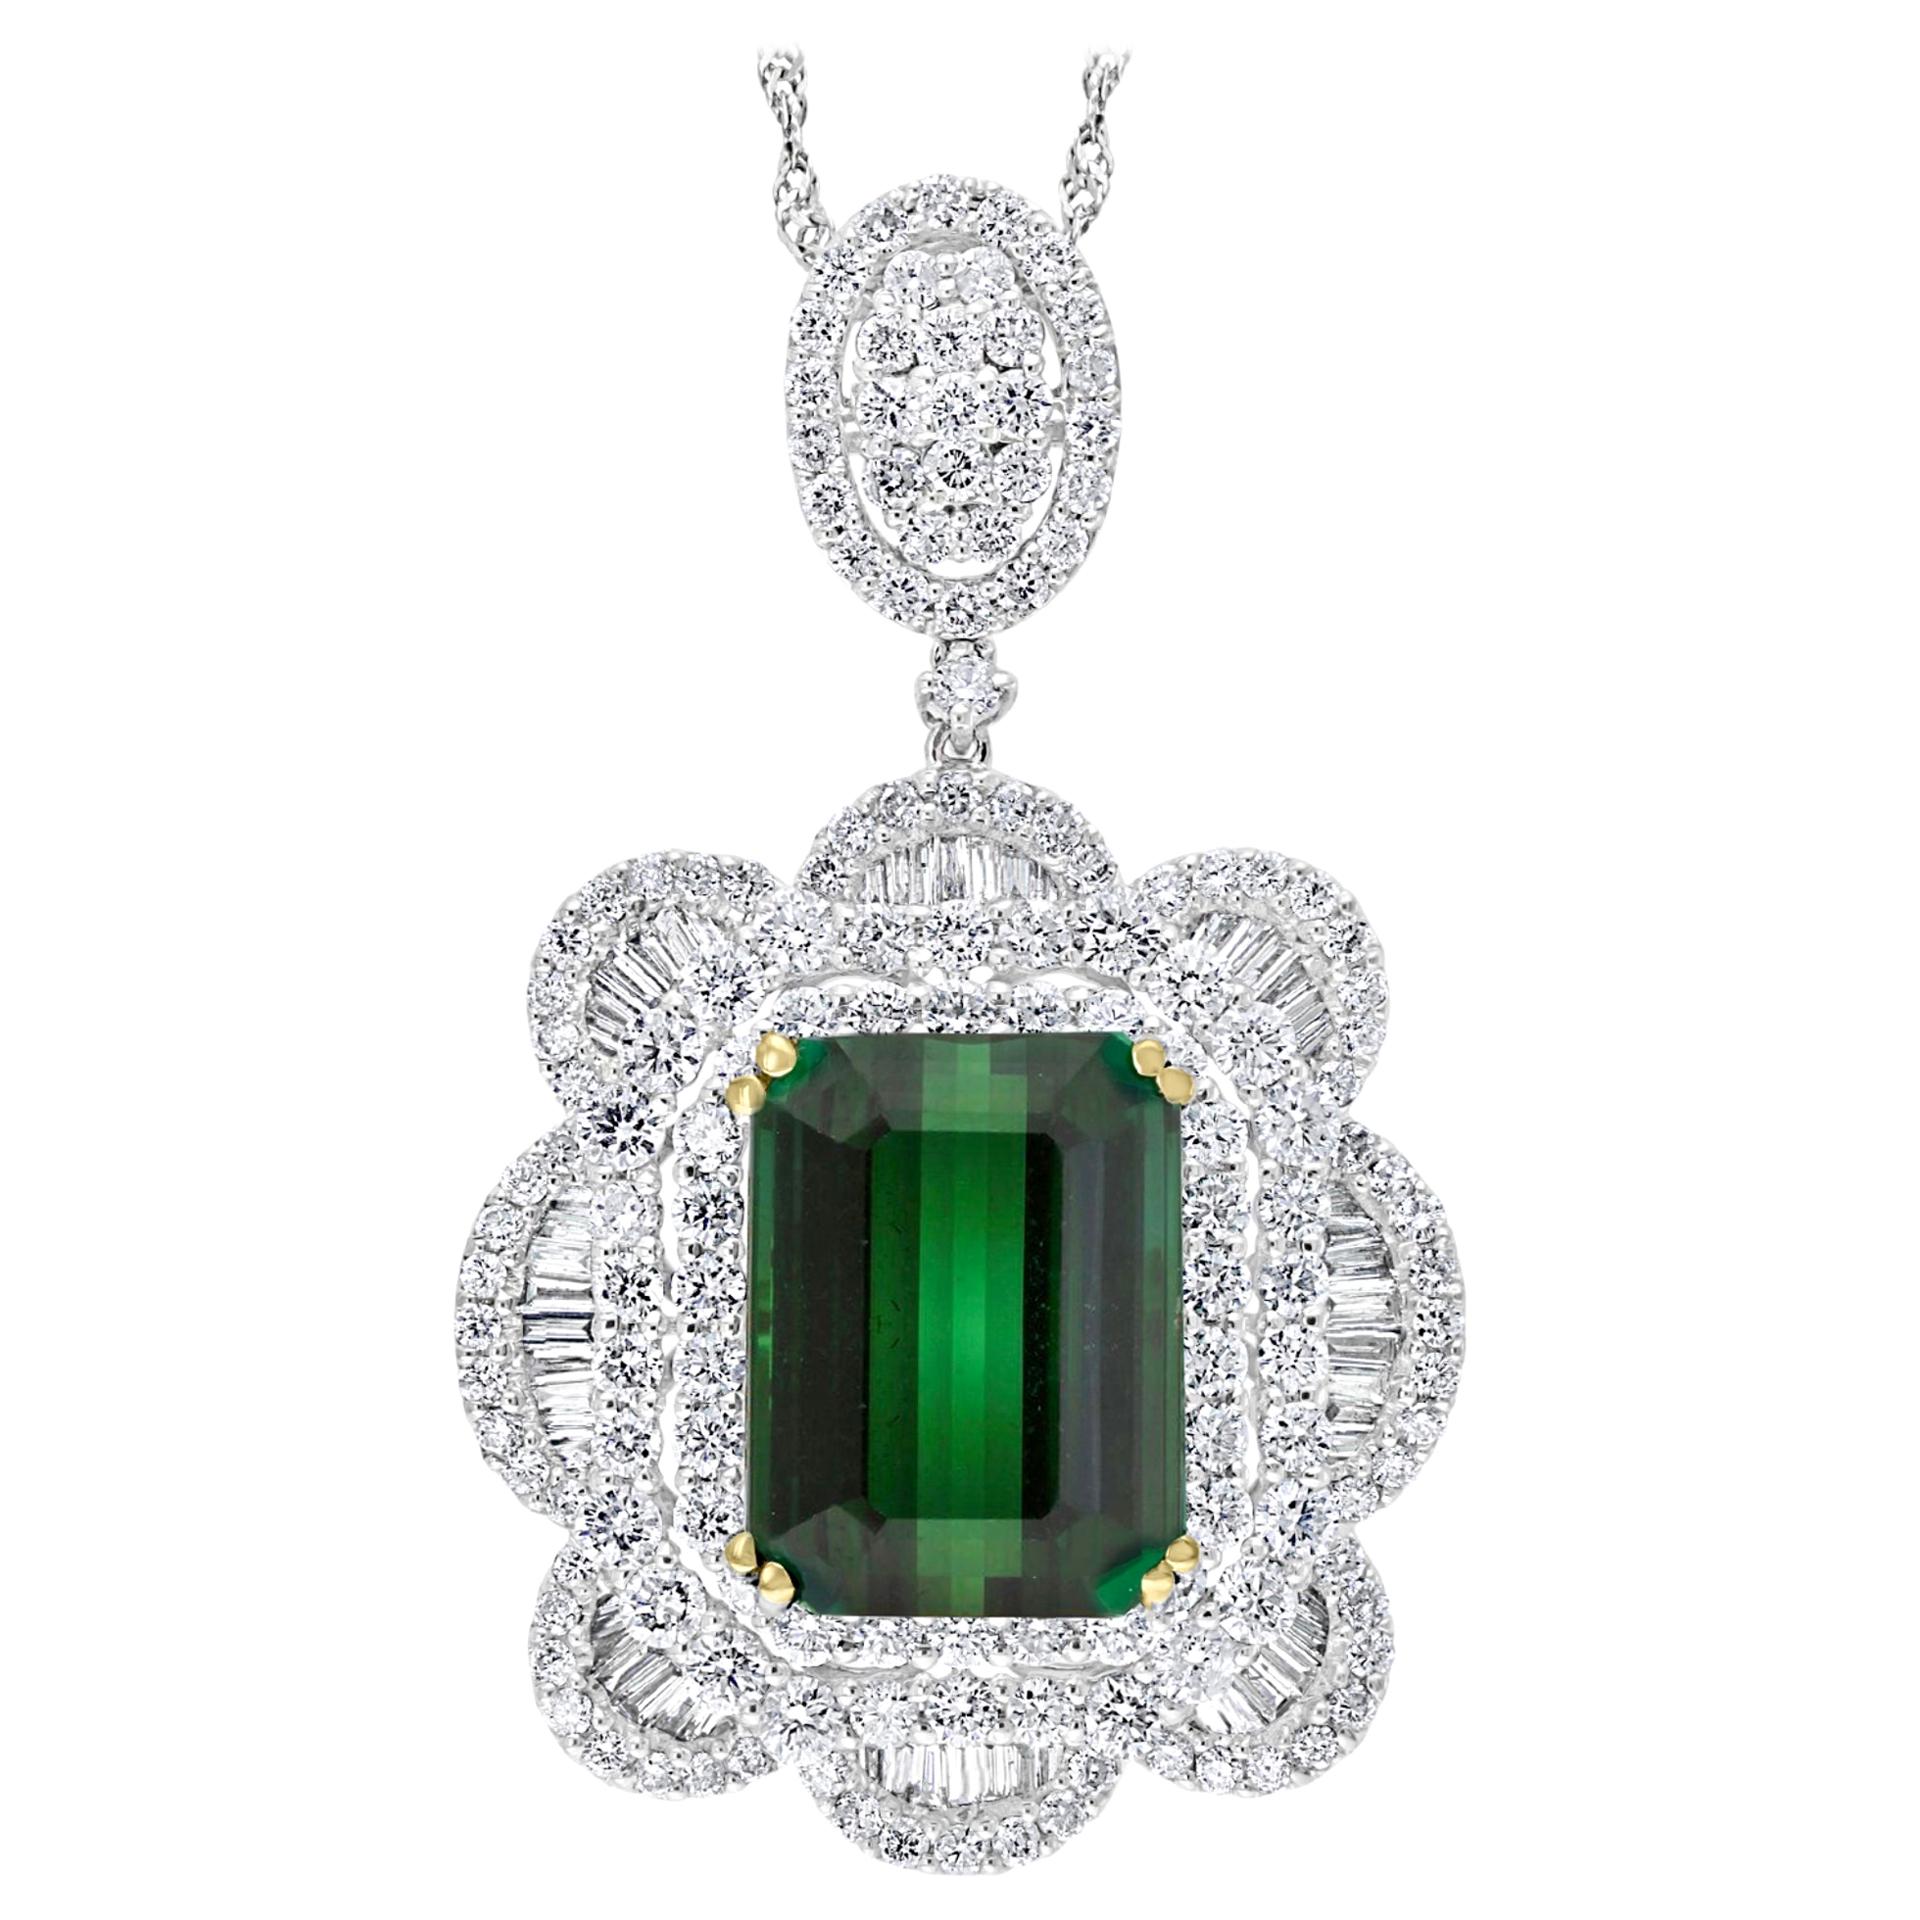 11.2 Carat Green Tourmaline & 4.5 Carat Diamond Pendant / Necklace 18 Karat Gold